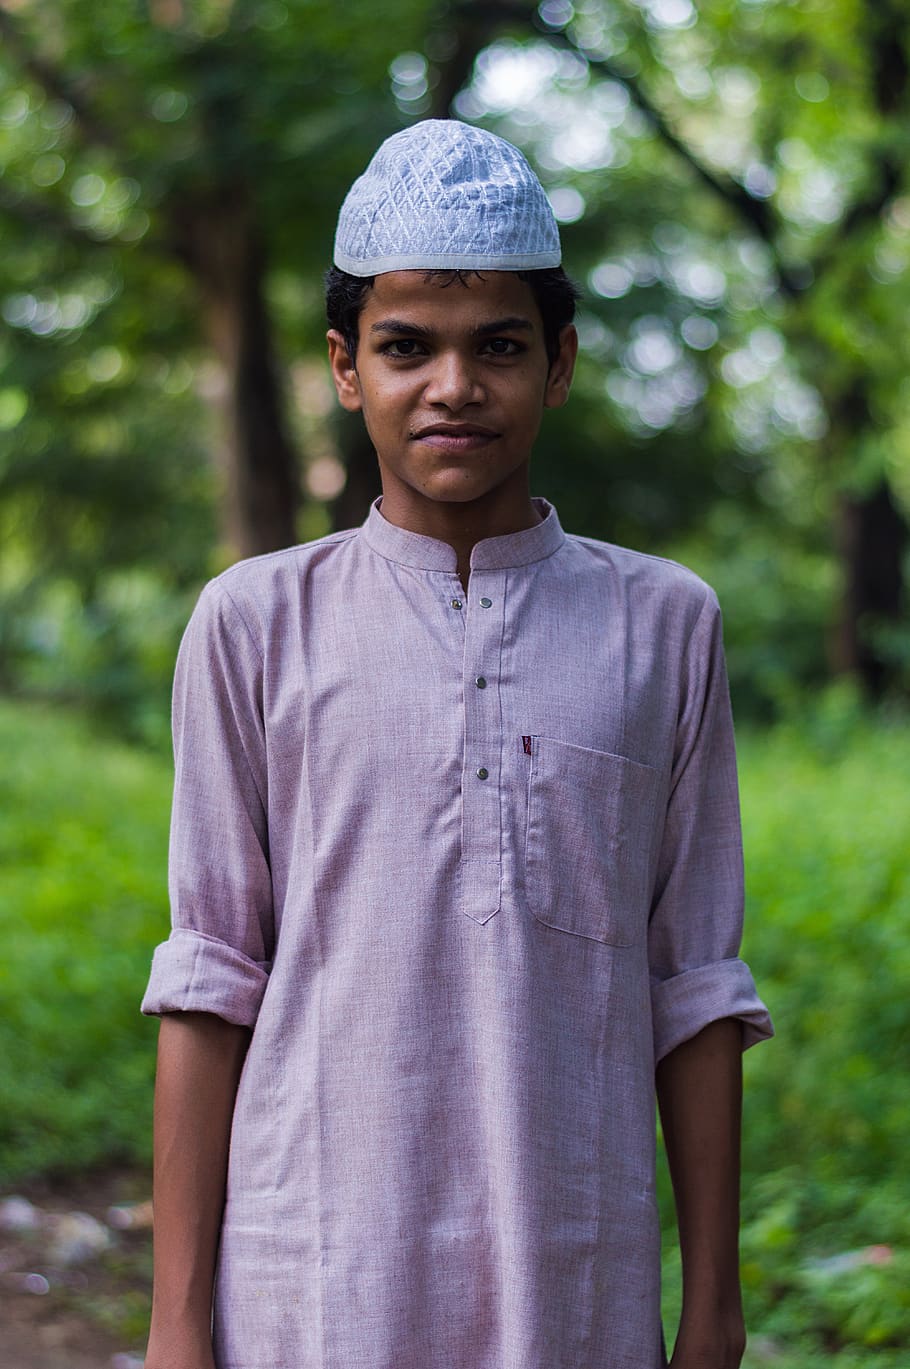 muçulmano, menino, índia, retrato, menino muçulmano com tampa de caveira, olhando para a câmera, de pé, pessoas reais, uma pessoa, vista frontal